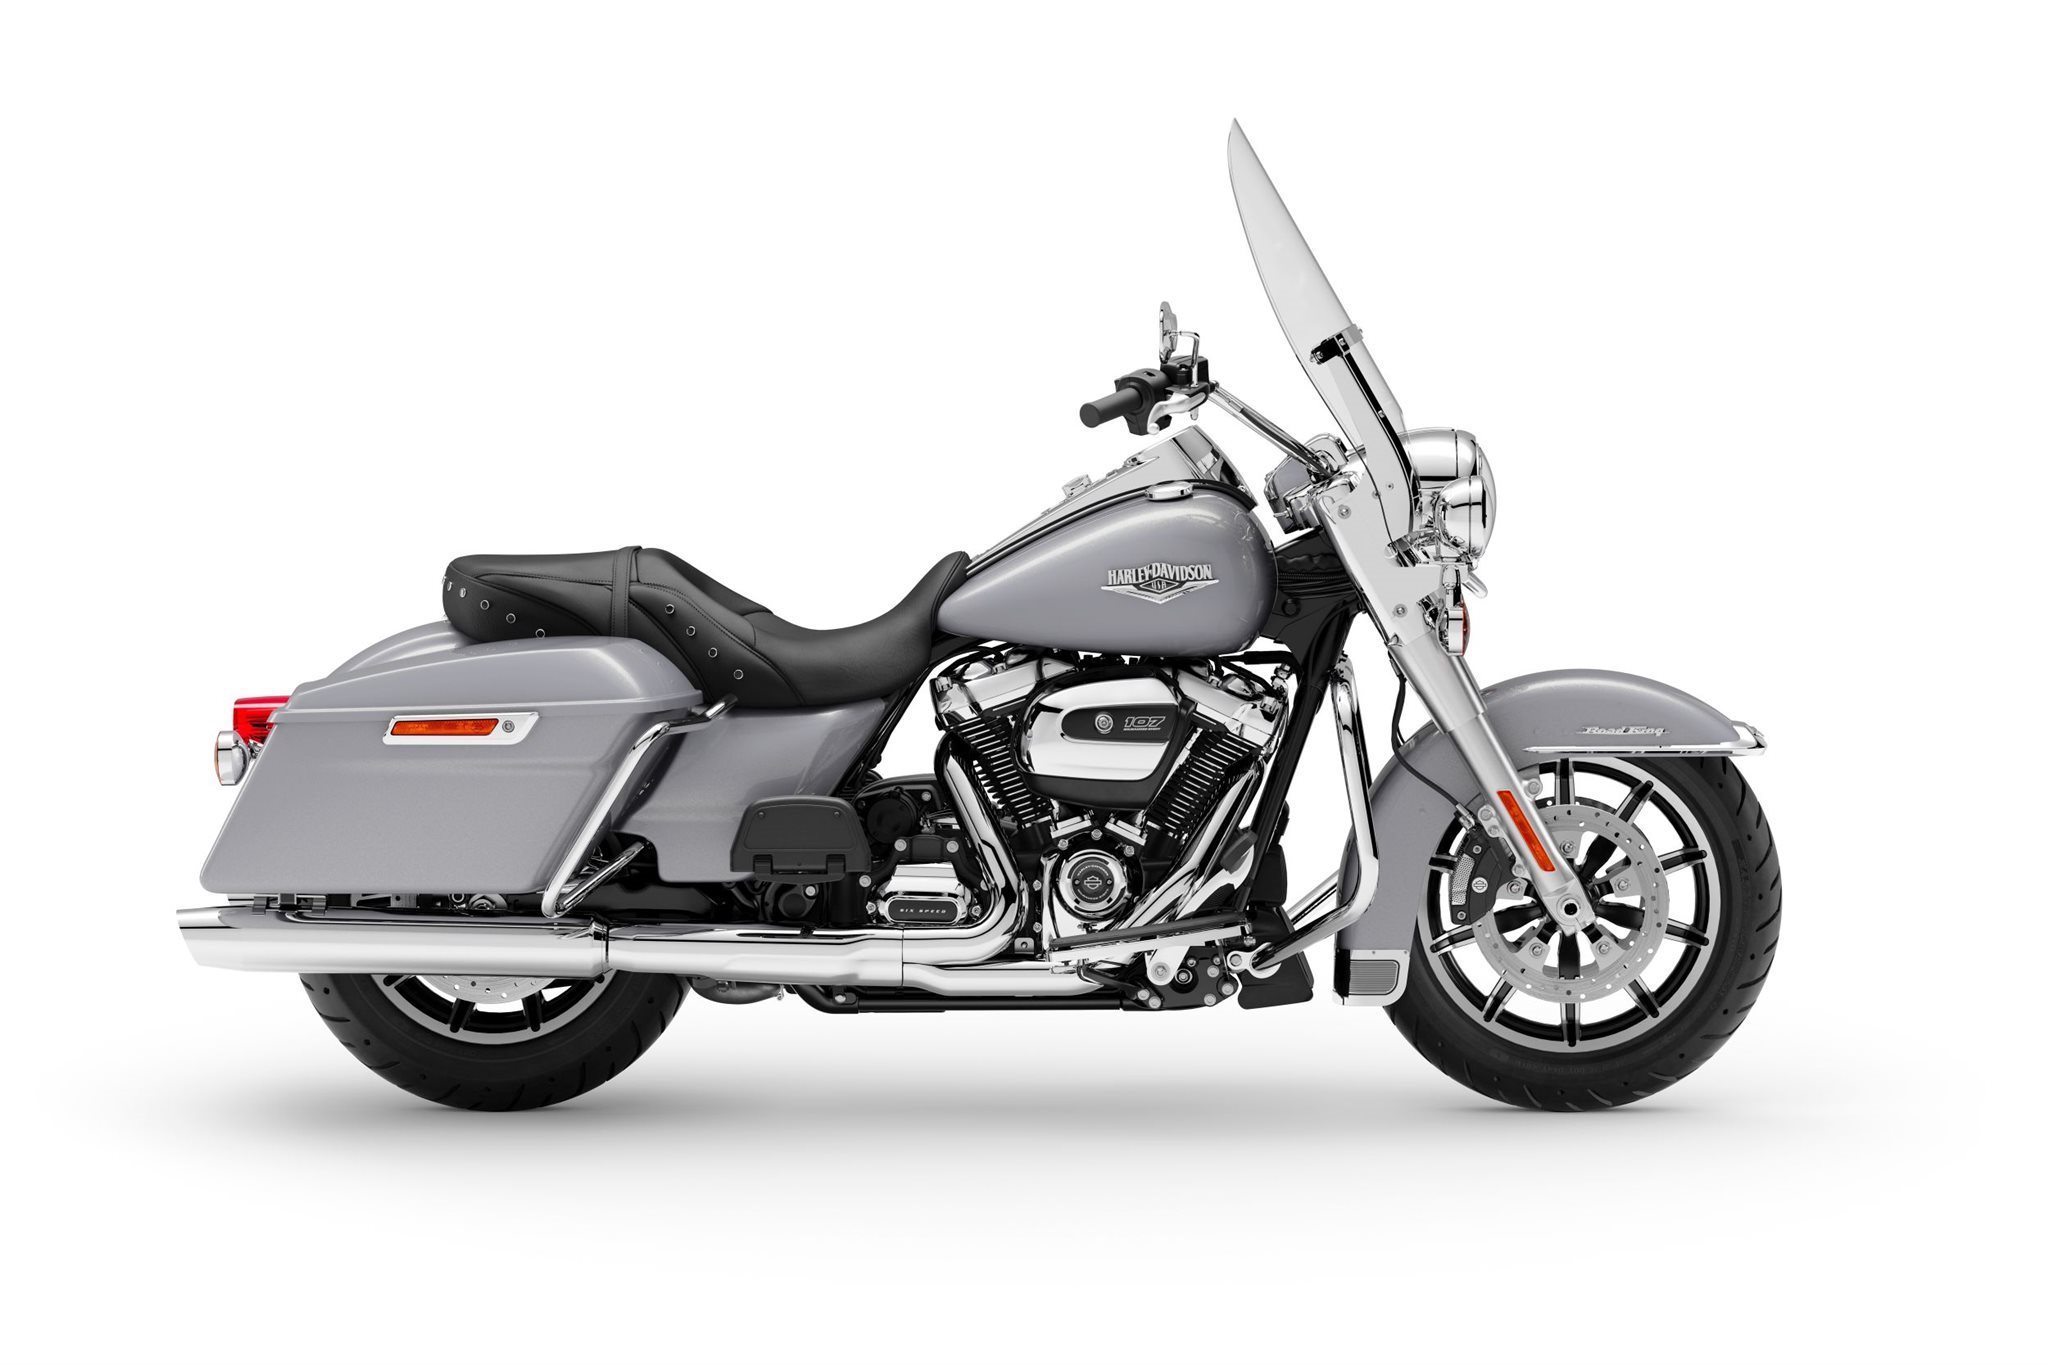 Motorrad Vergleich Harley Davidson Touring Street Glide Special Flhxs 2021 Vs Harley Davidson Touring Road King Flhr 2021